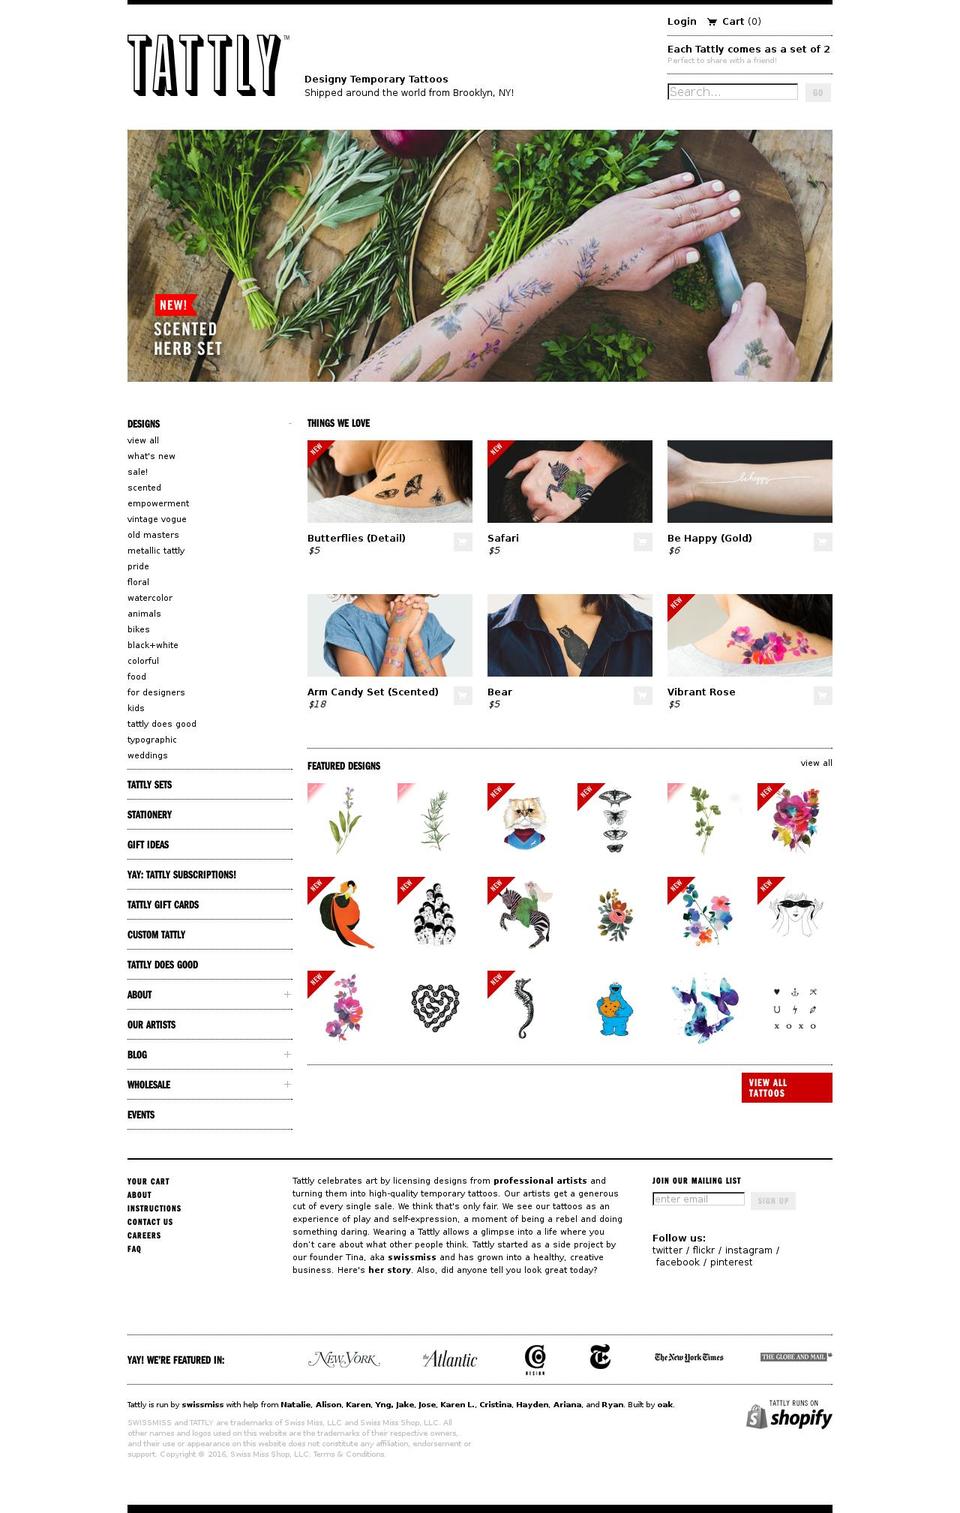 Tattly Shopify theme site example tatt.ly